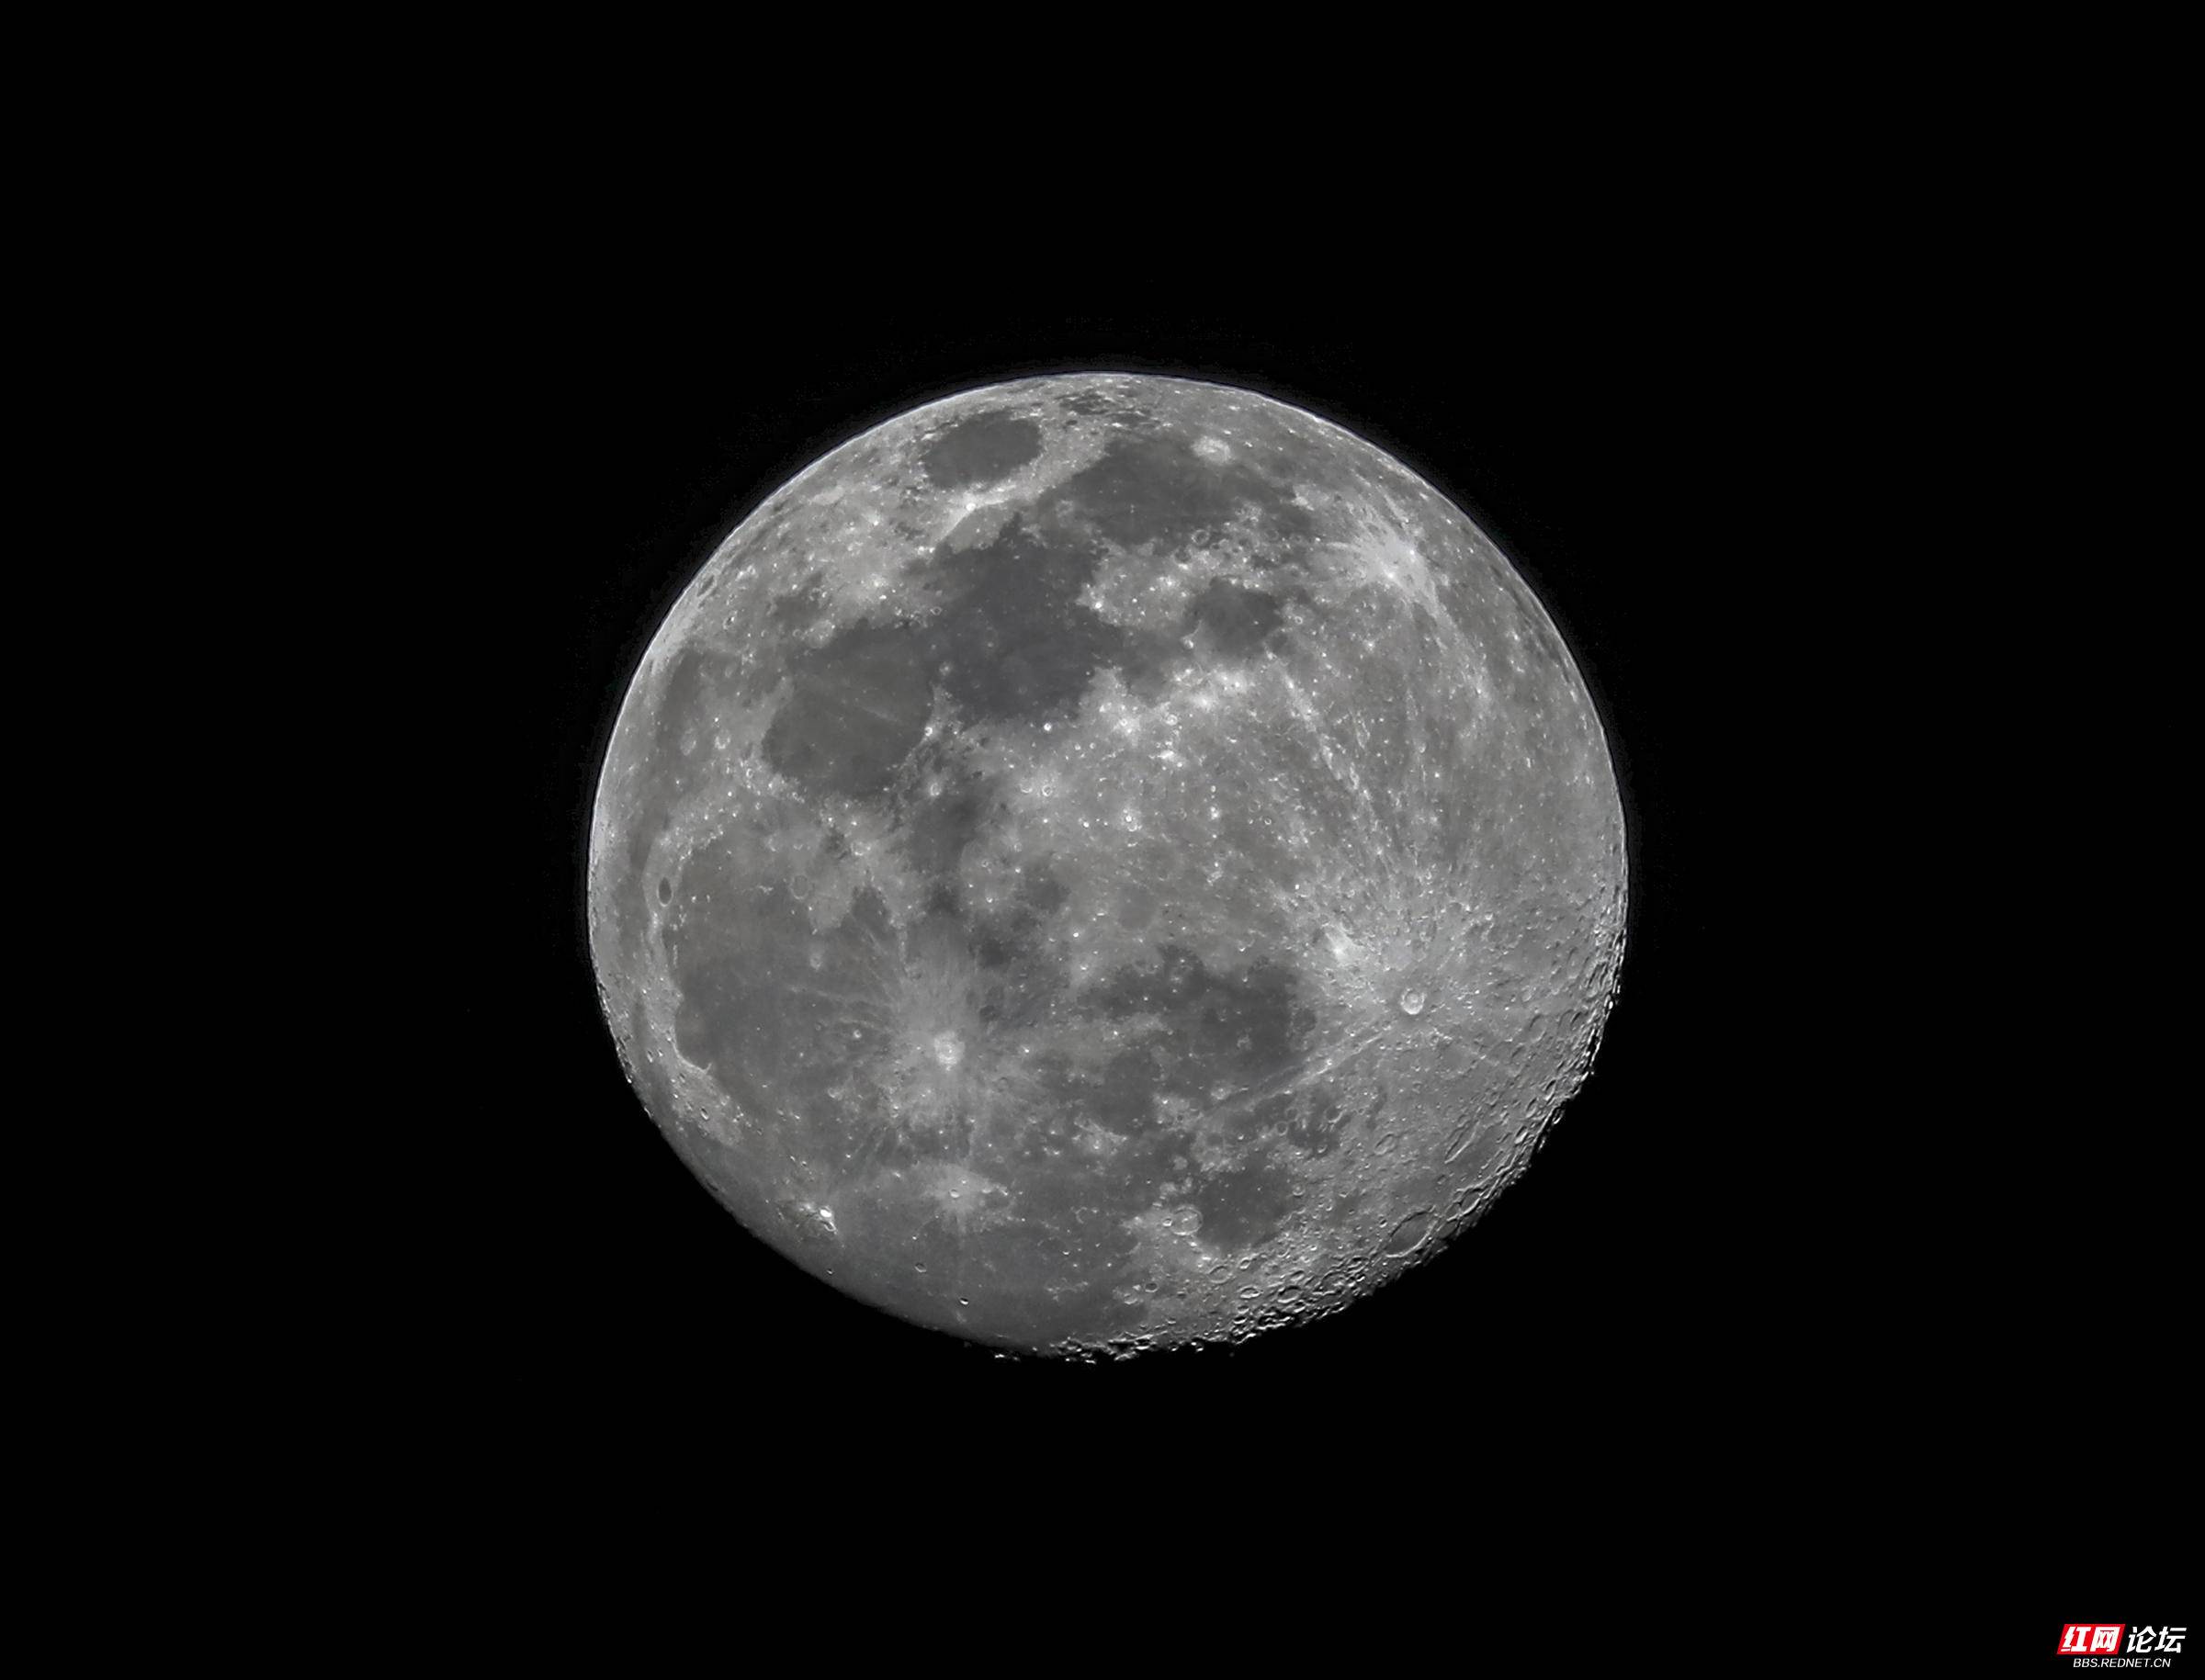 【摄影天地】 一组高清的"超级月亮"